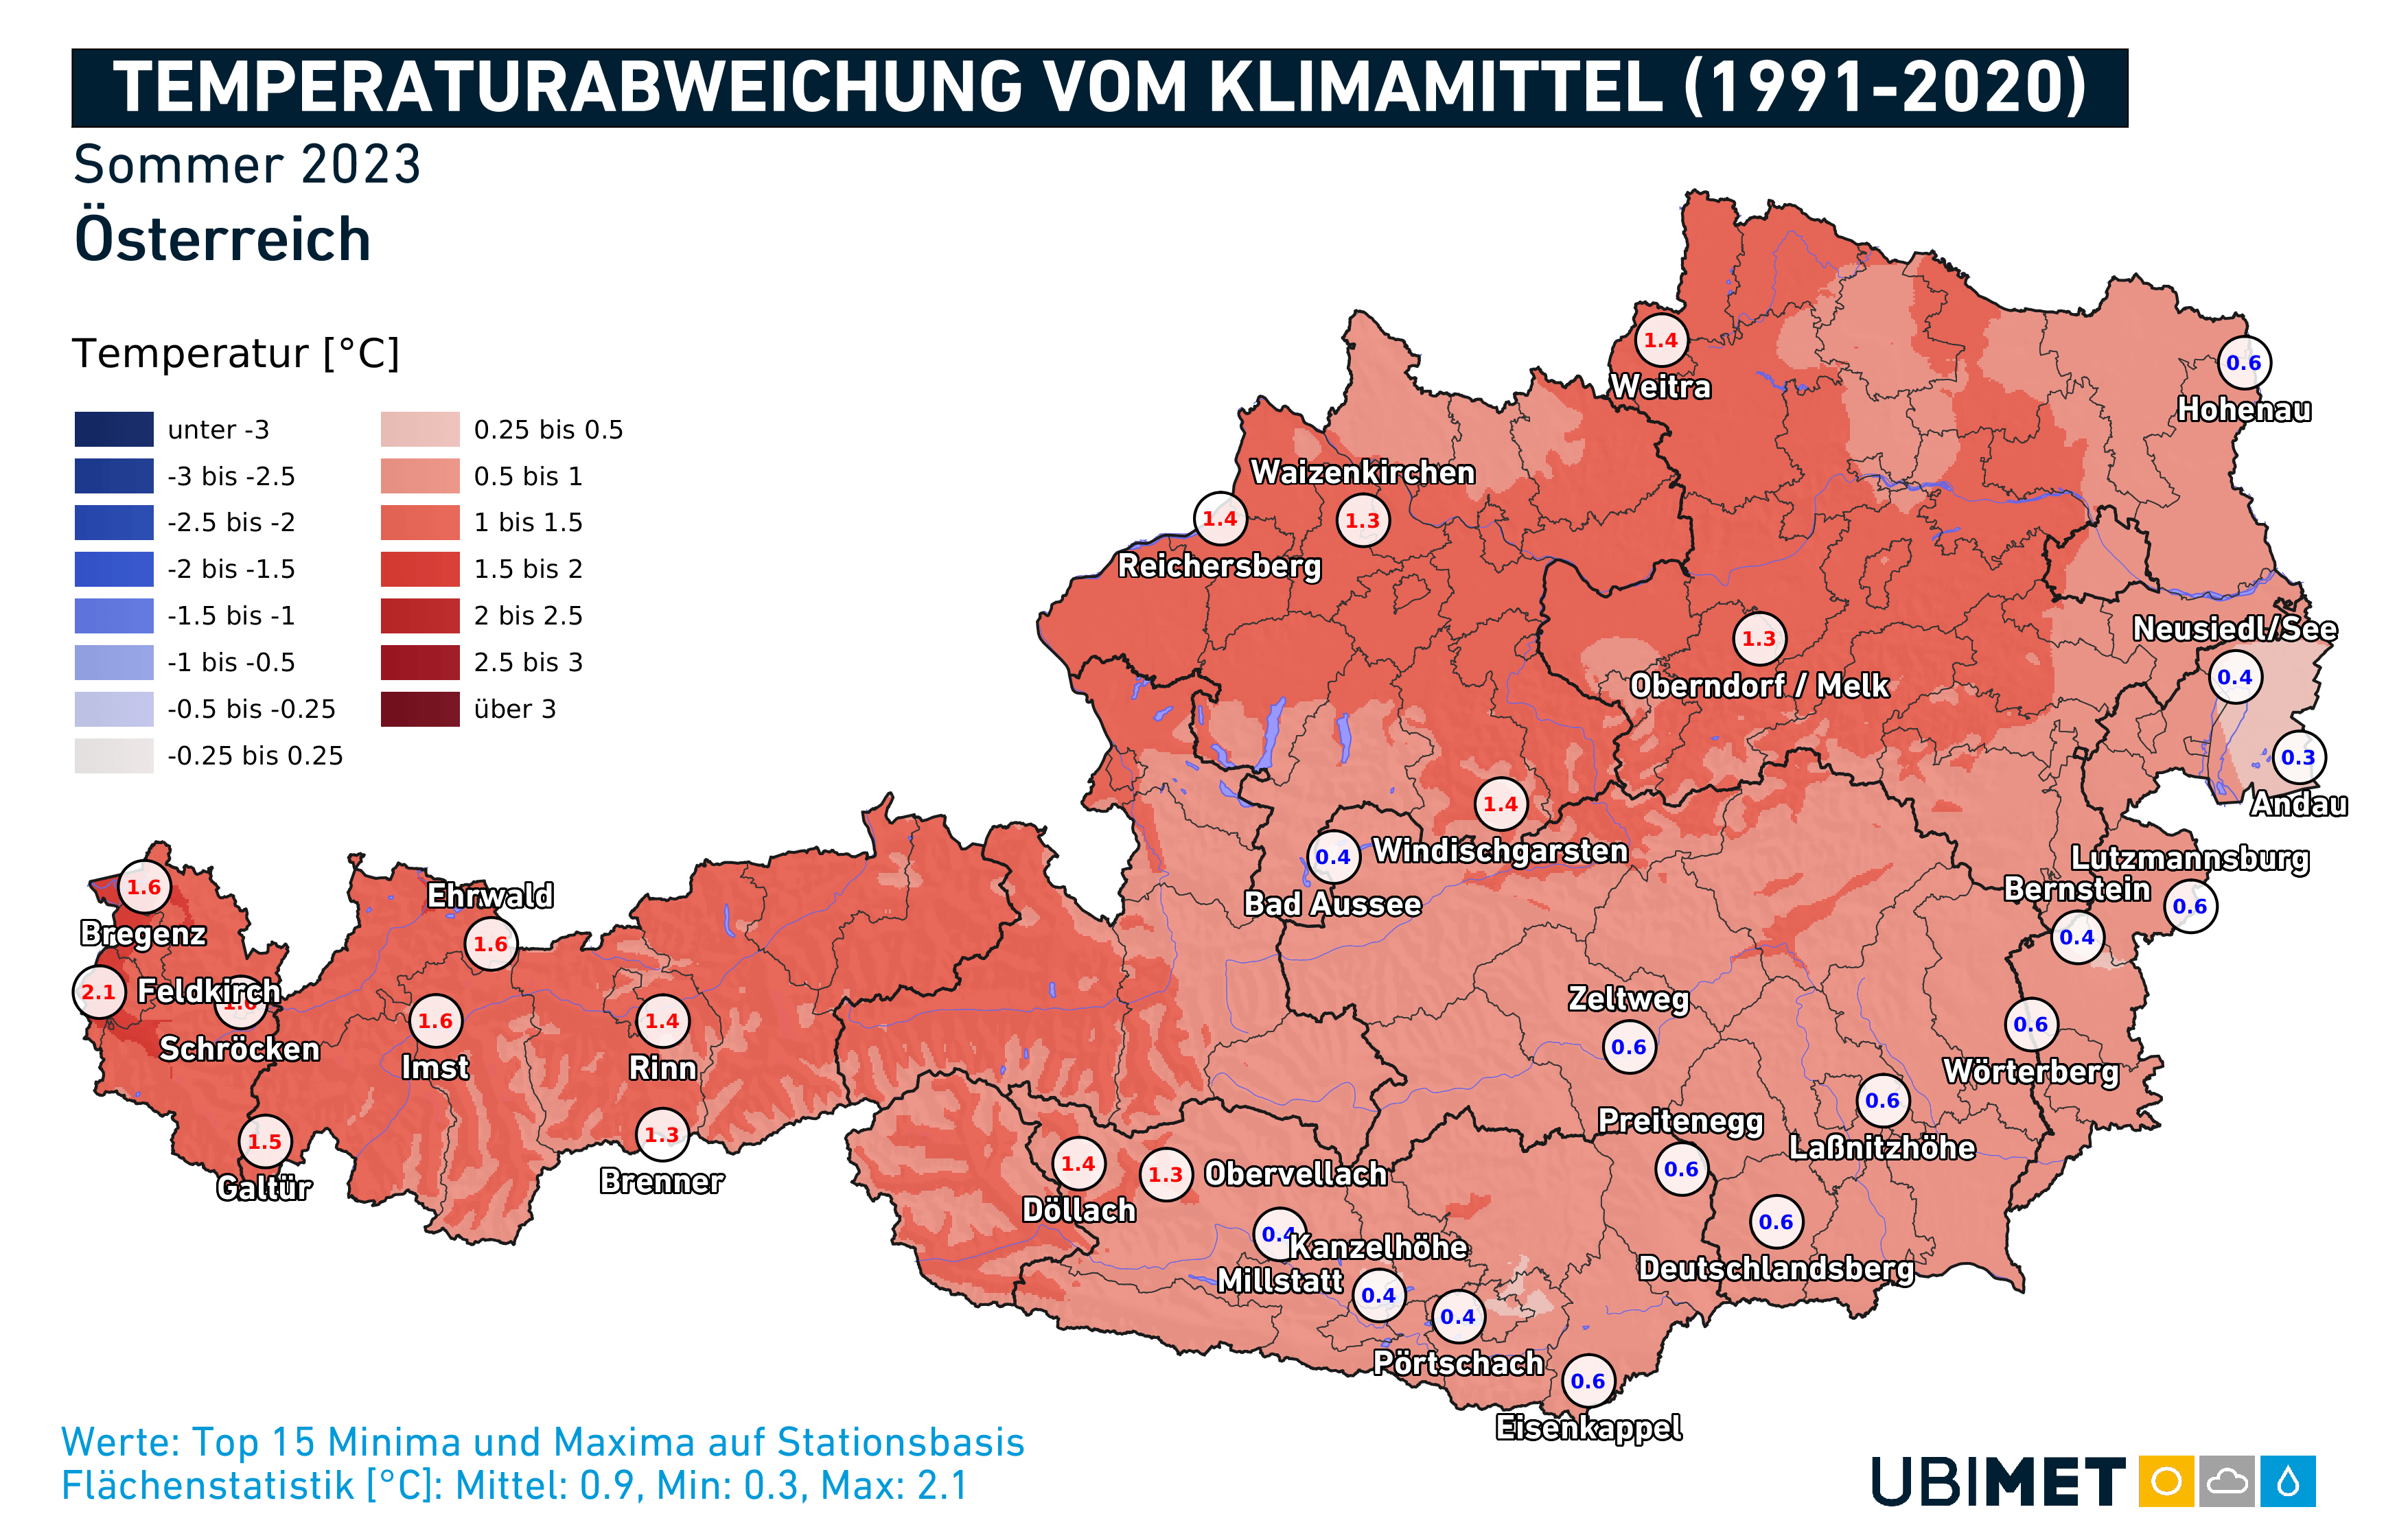 Temperaturabweichung in Österreich im Sommer 2023 - UBIMET